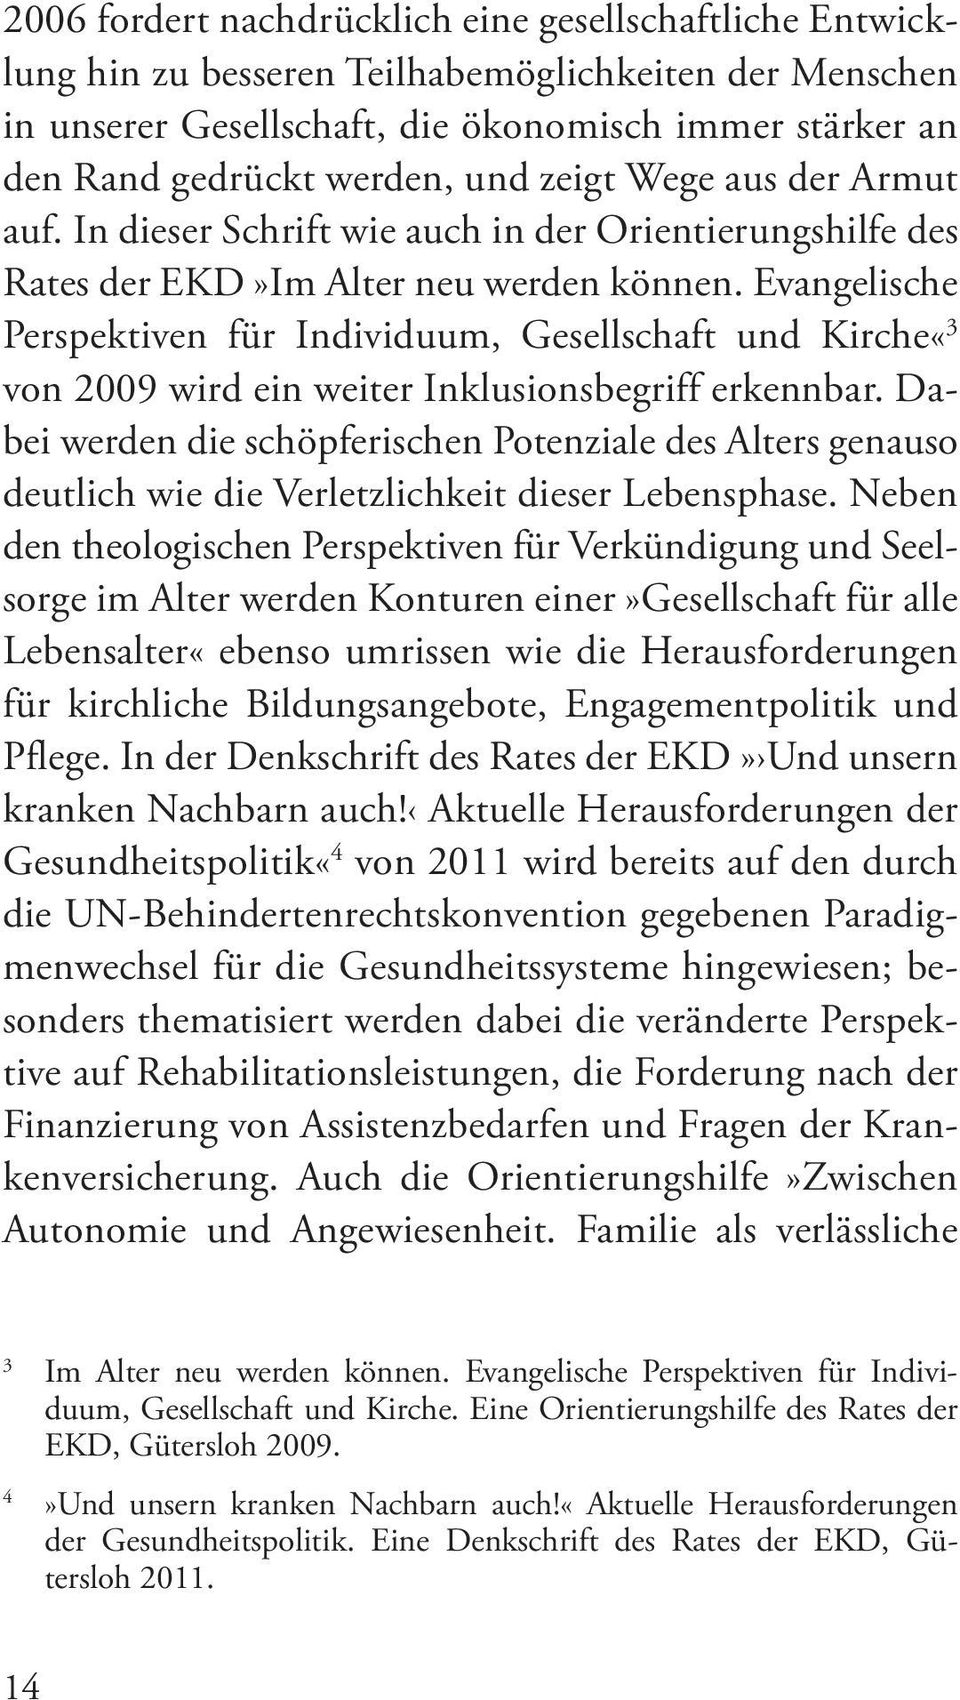 Evangelische Perspektiven für Individuum, Gesellschaft und Kirche«3 von 2009 wird ein weiter Inklusionsbegriff erkennbar.